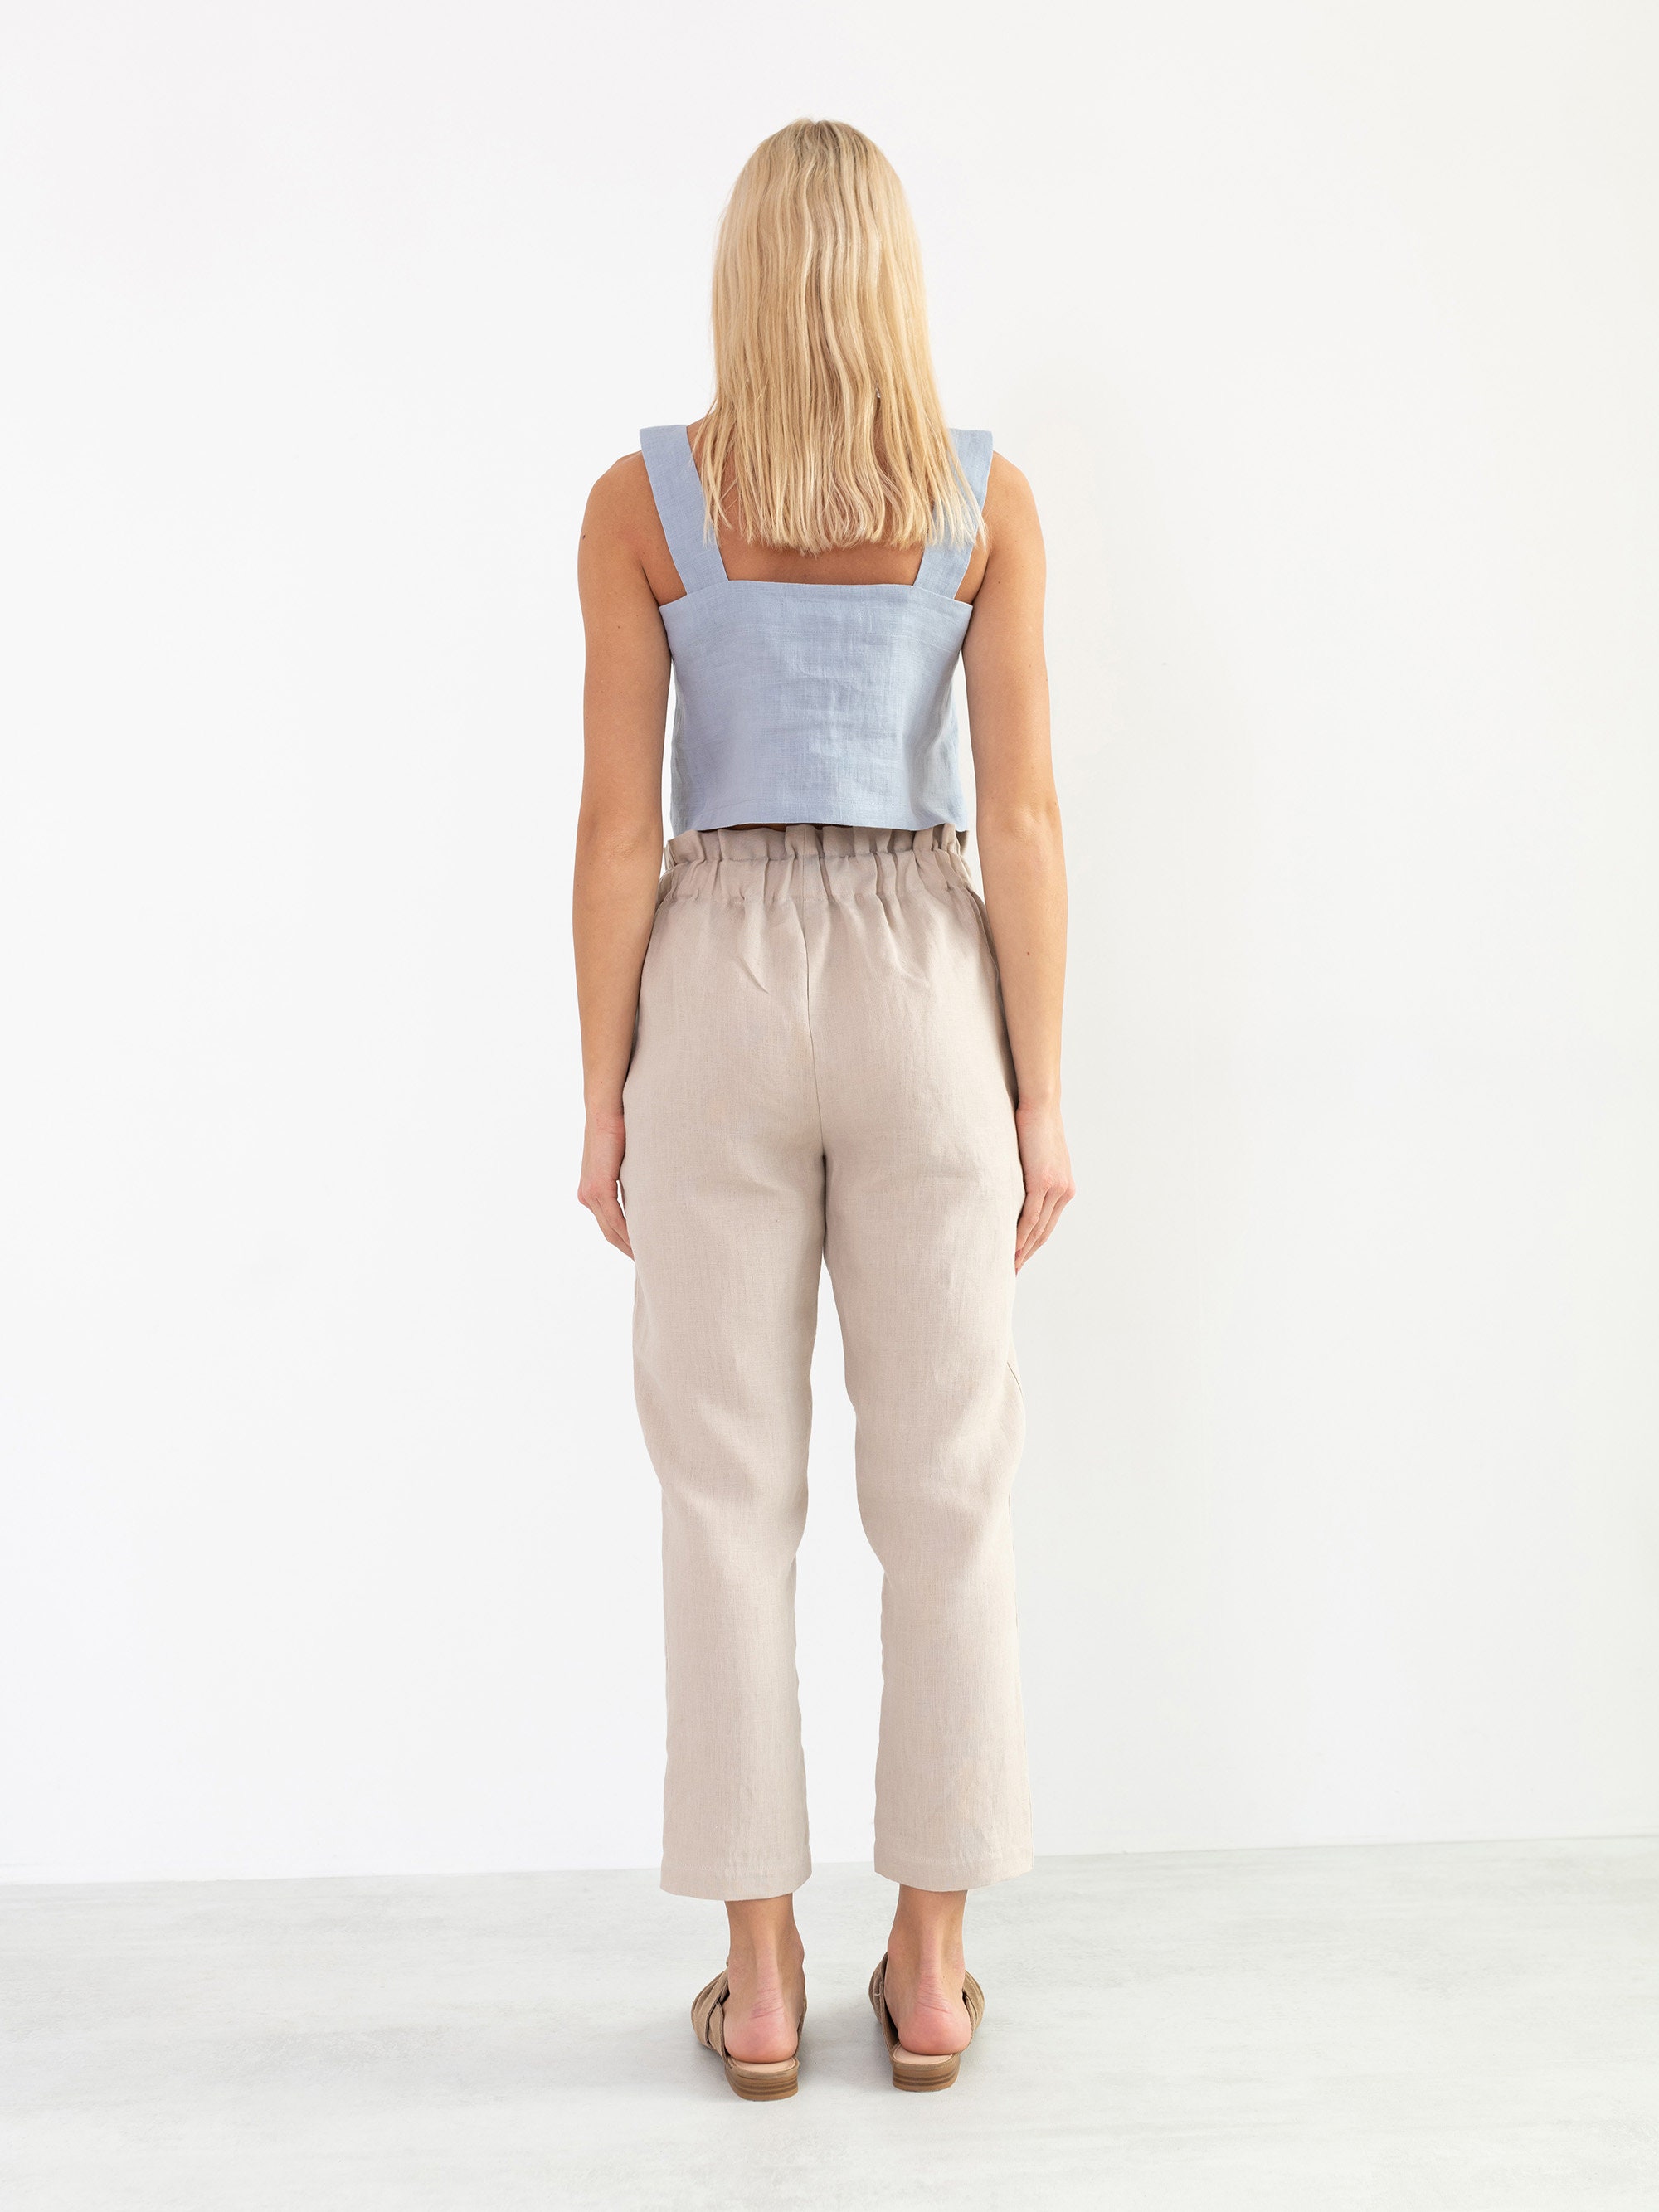 NOAH Linen Pants for Women / High Waisted Linen Trousers - Etsy